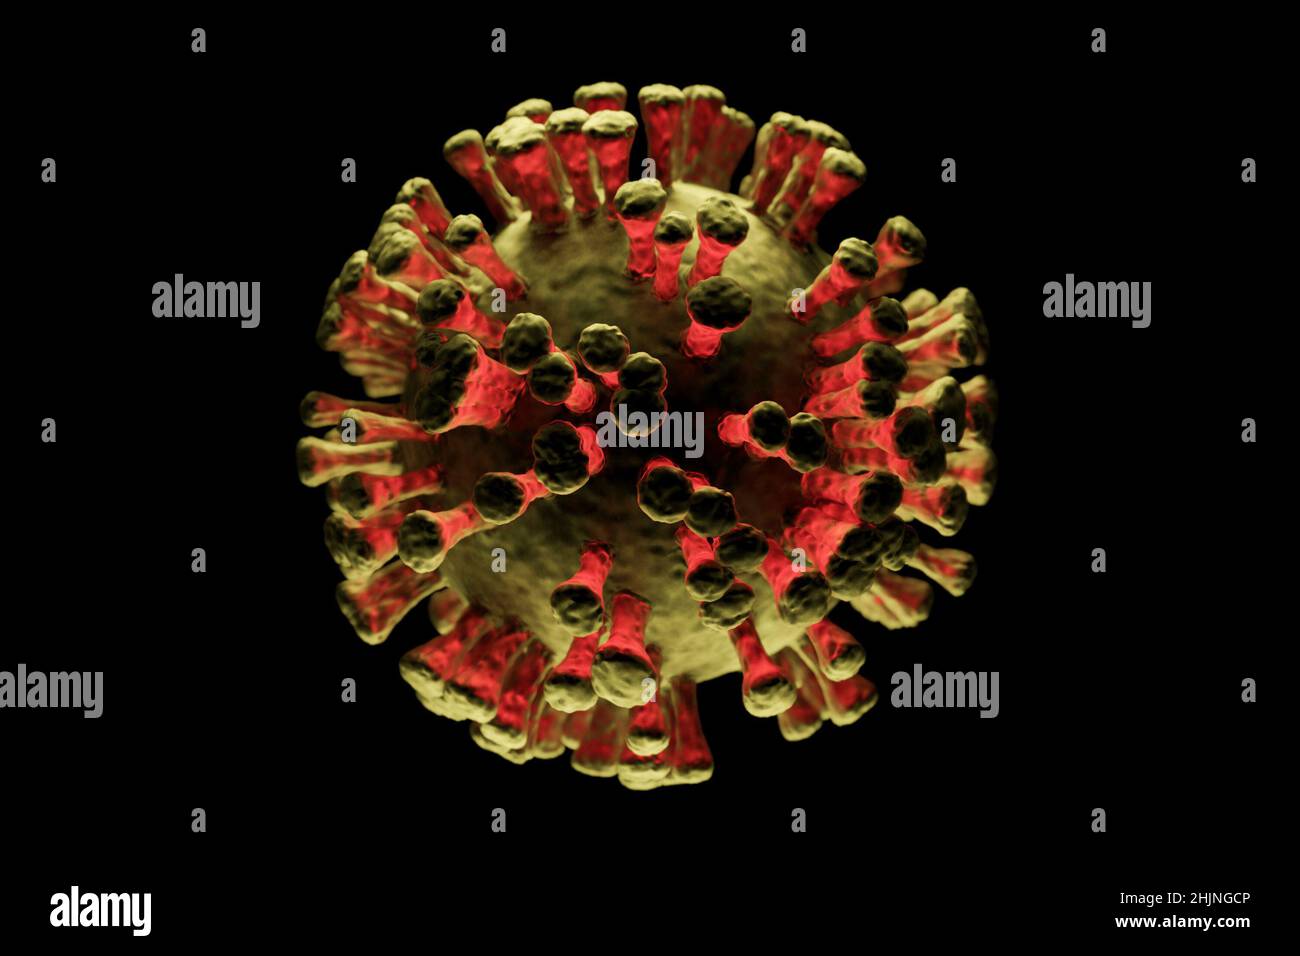 Illustrazione di una singola cellula virale su sfondo scuro, visualizzazione di un'infezione Foto Stock